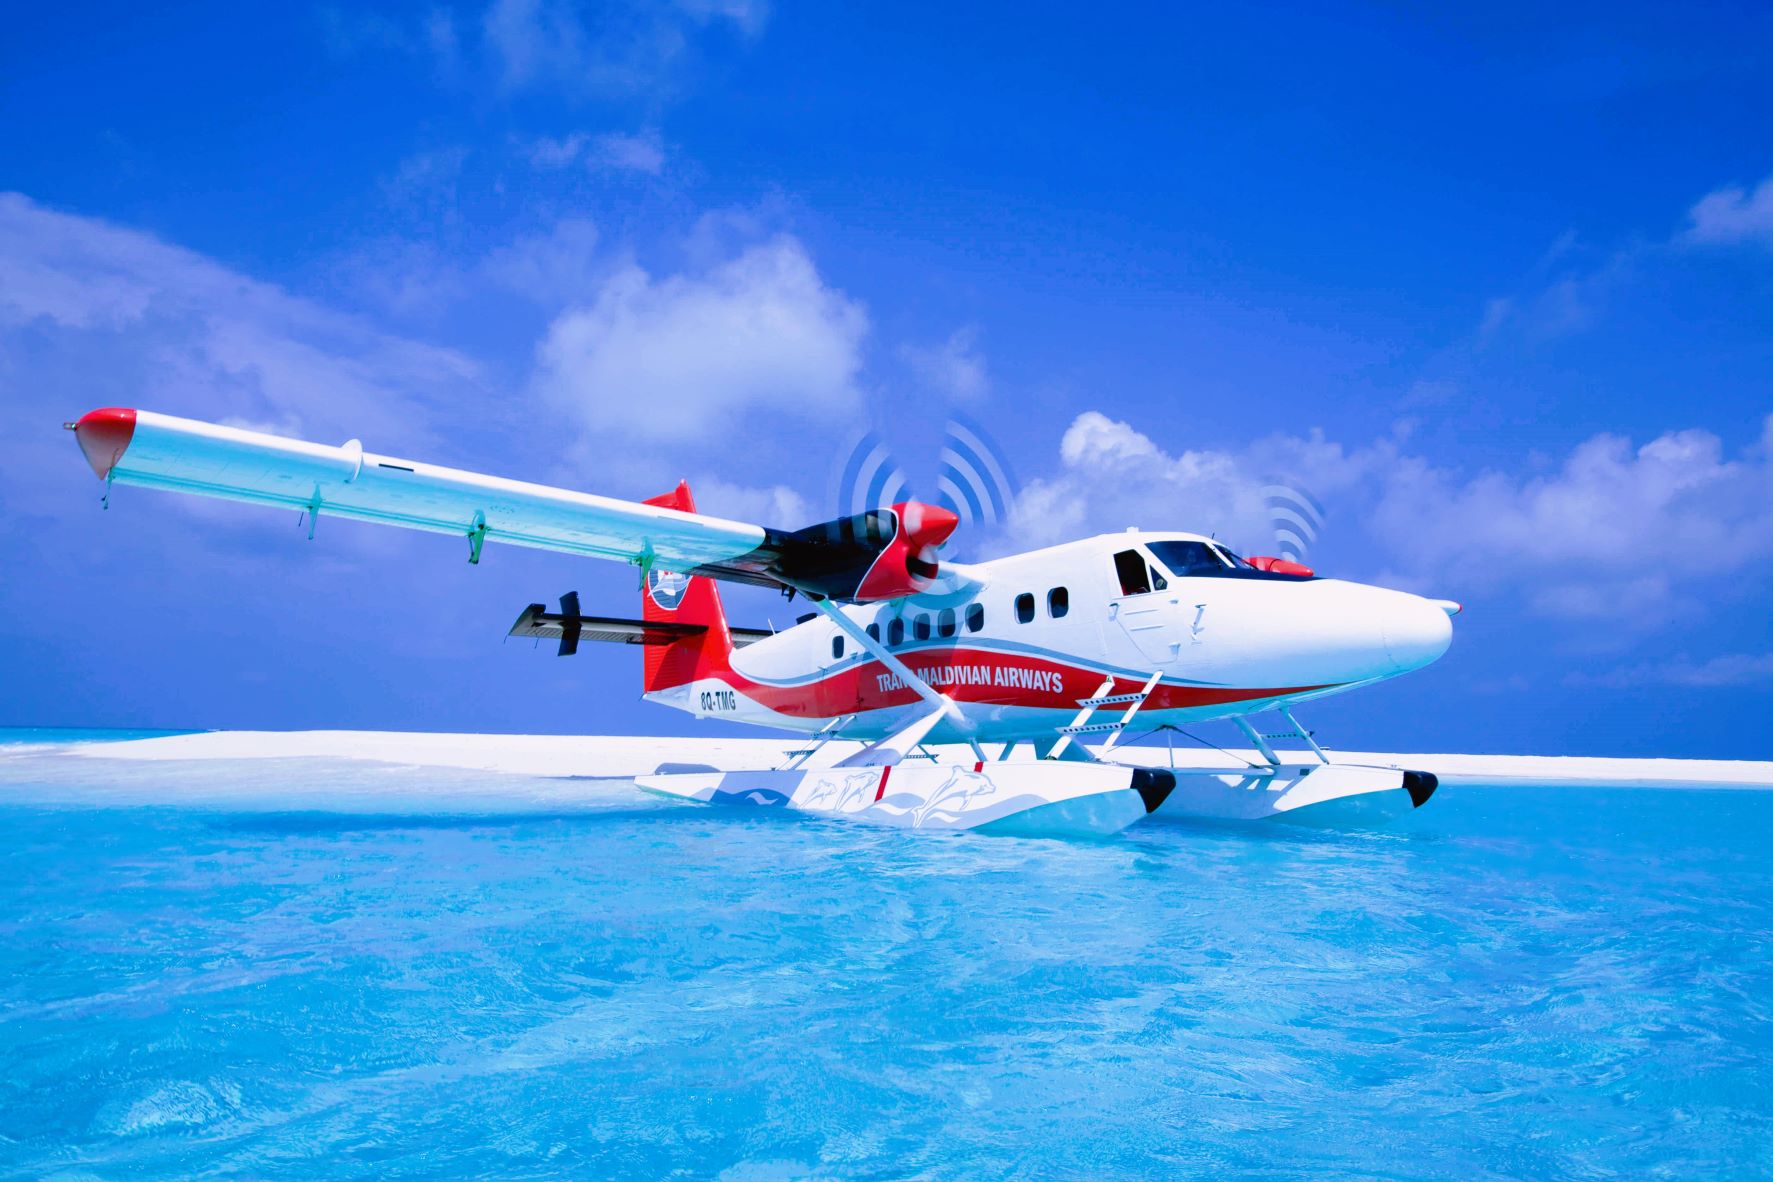 【レア】水上飛行機   X-320 mini  海陸空